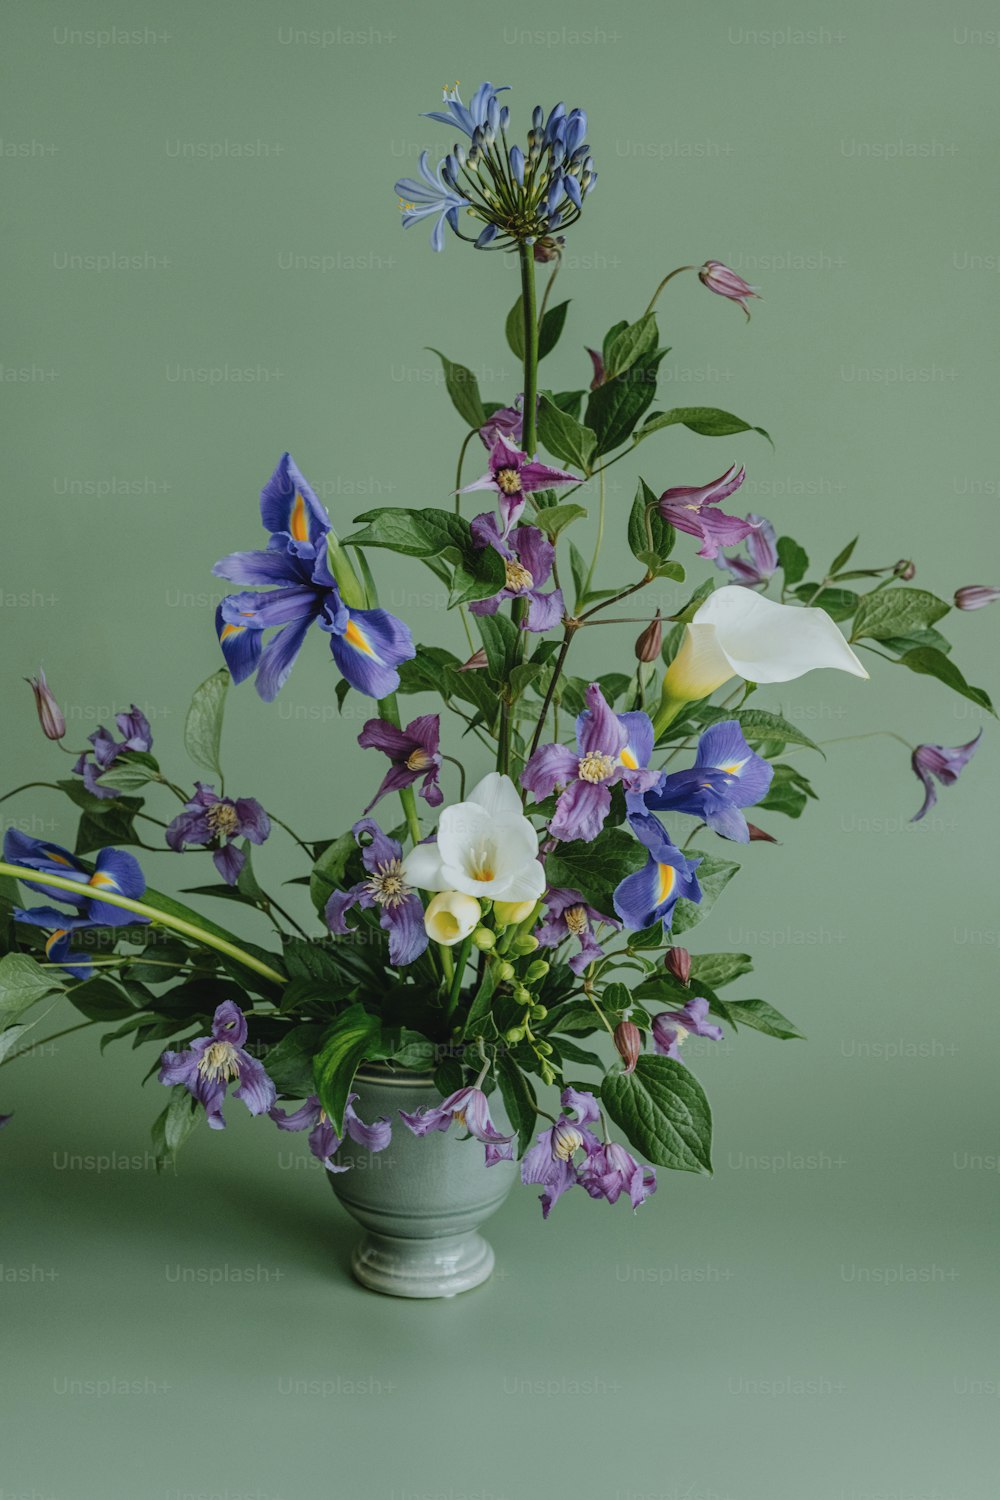 Un jarrón lleno de flores púrpuras y blancas